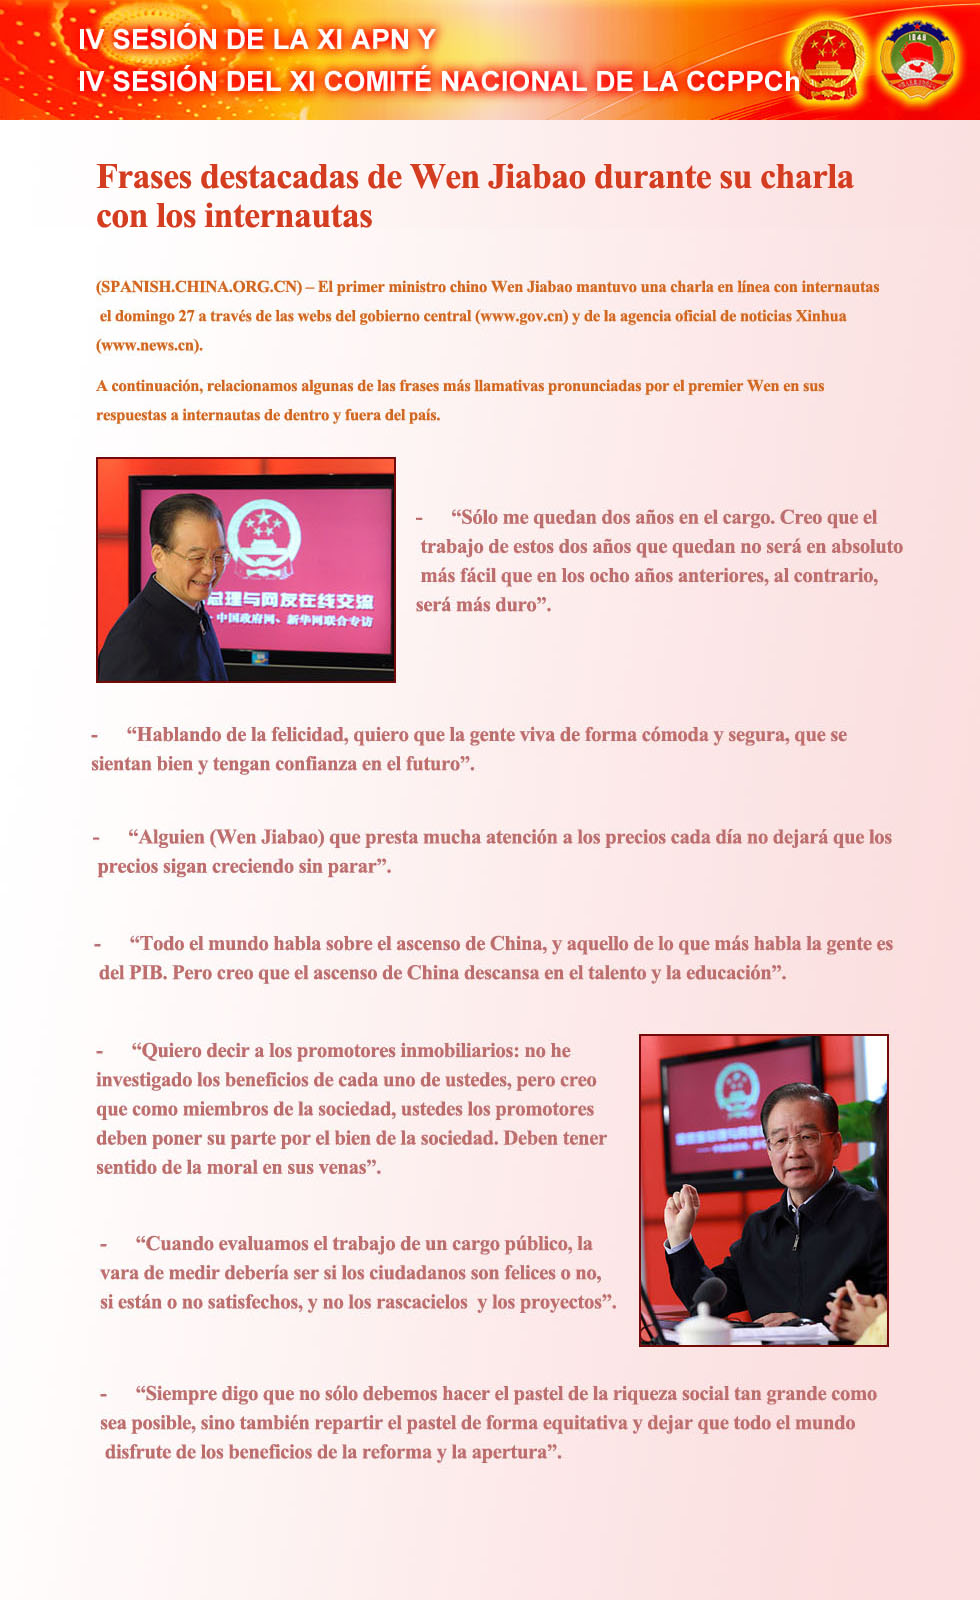 Frases destacadas Wen Jiabao charla internautas 1